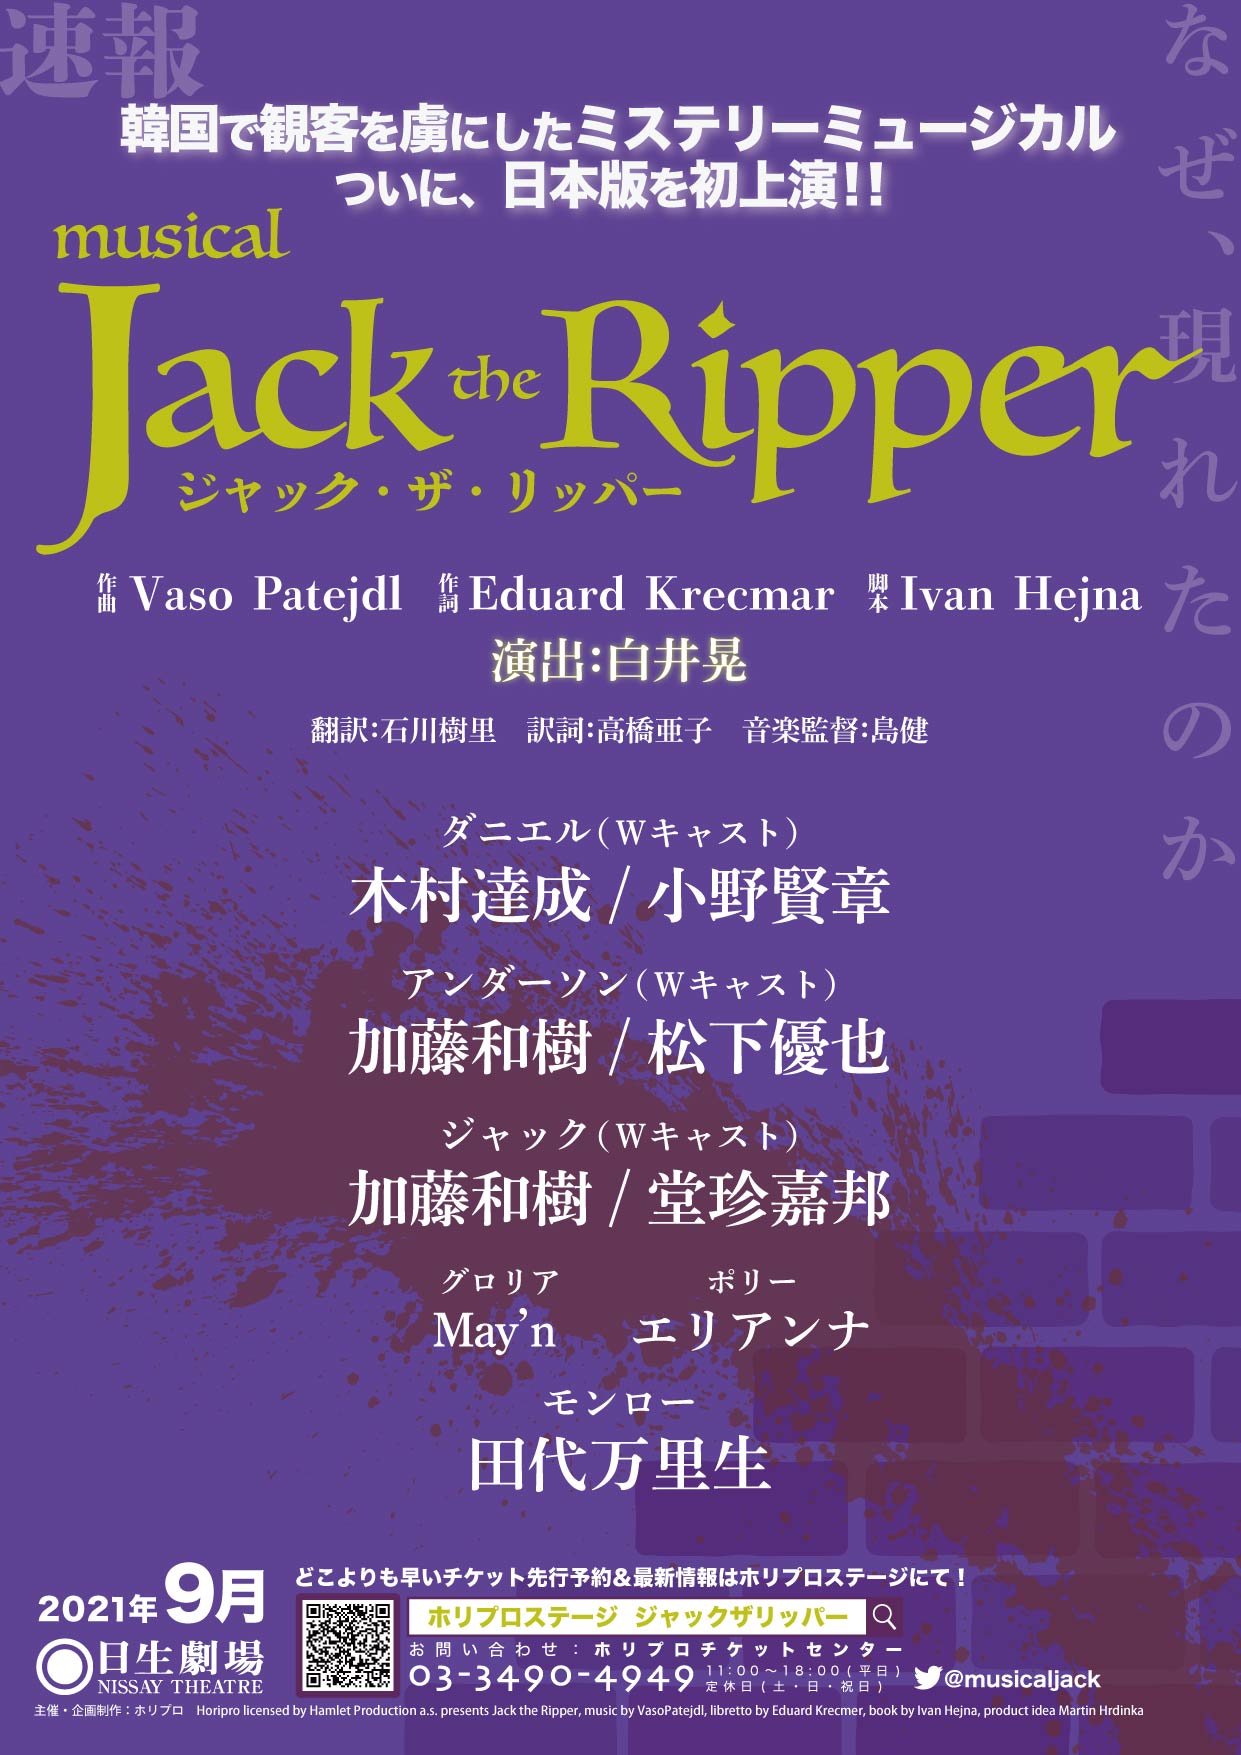 『ジャック・ザ・リッパー』木村達成・小野賢章ら6人の顔の“パーツ”を組み合わせたビジュアル解禁 イメージ画像